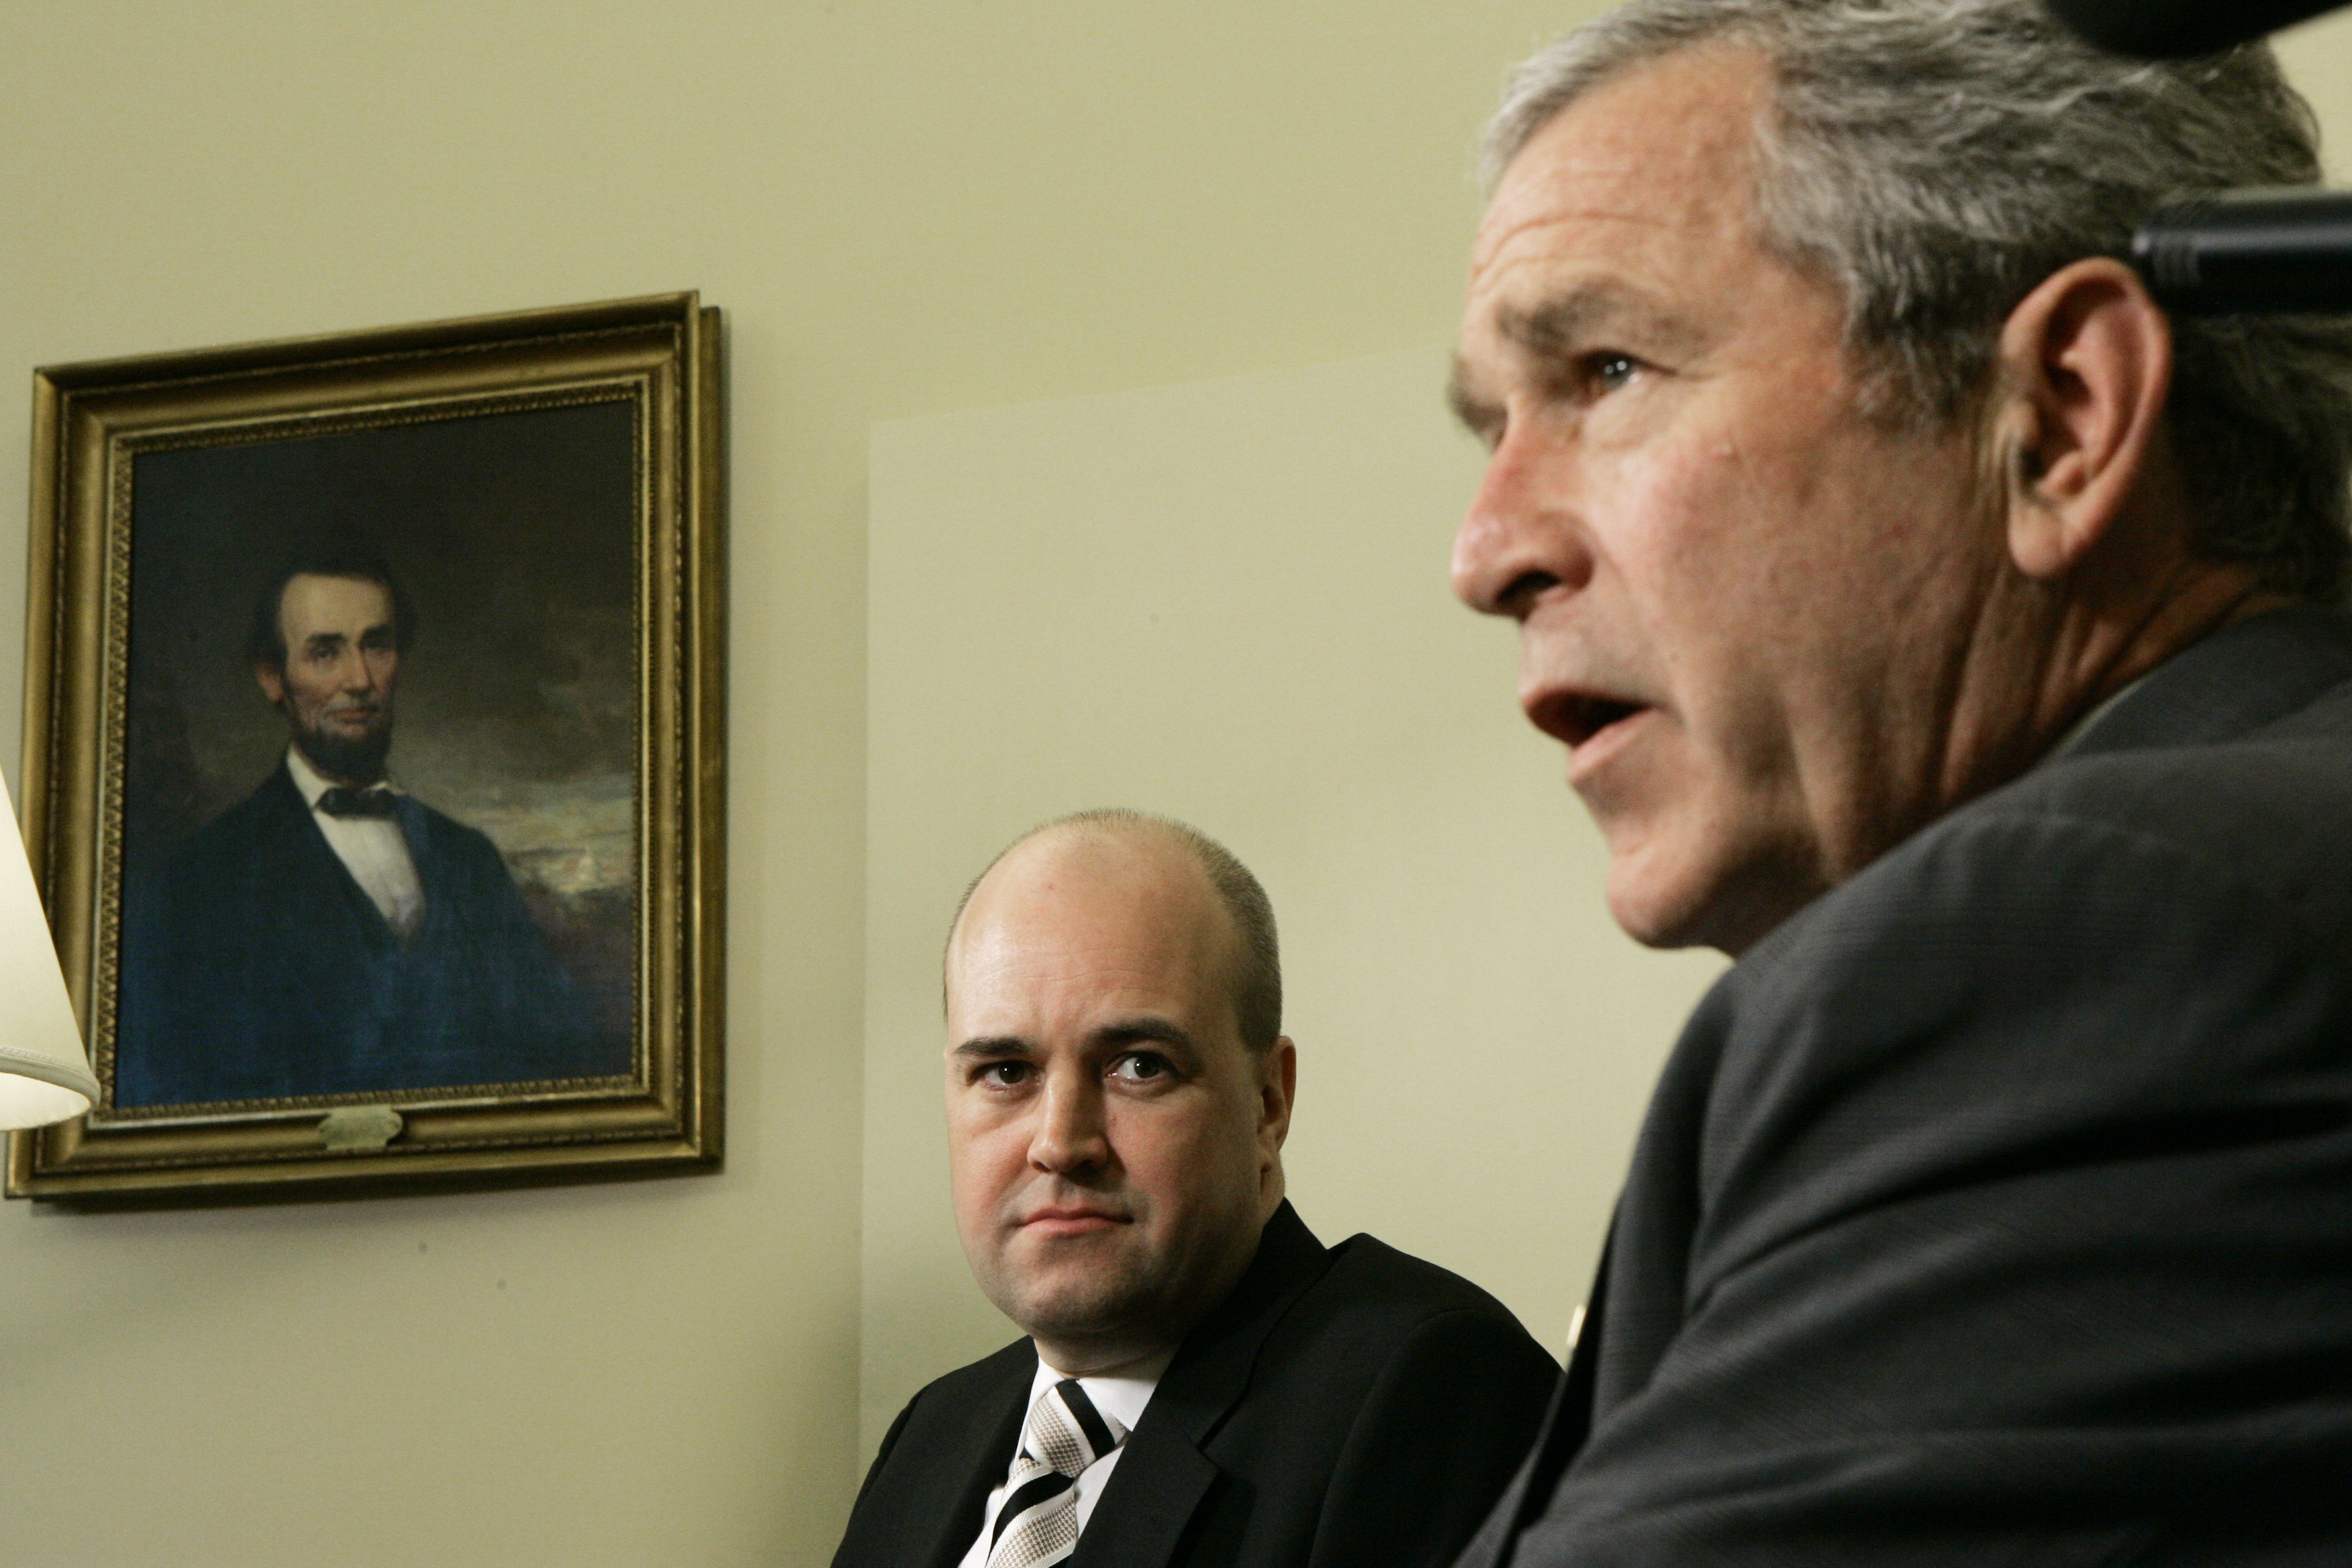 Statsminister Fredrik Reinfeldt (m) på besök hos dåvarande president George W Bush i Vita huset.